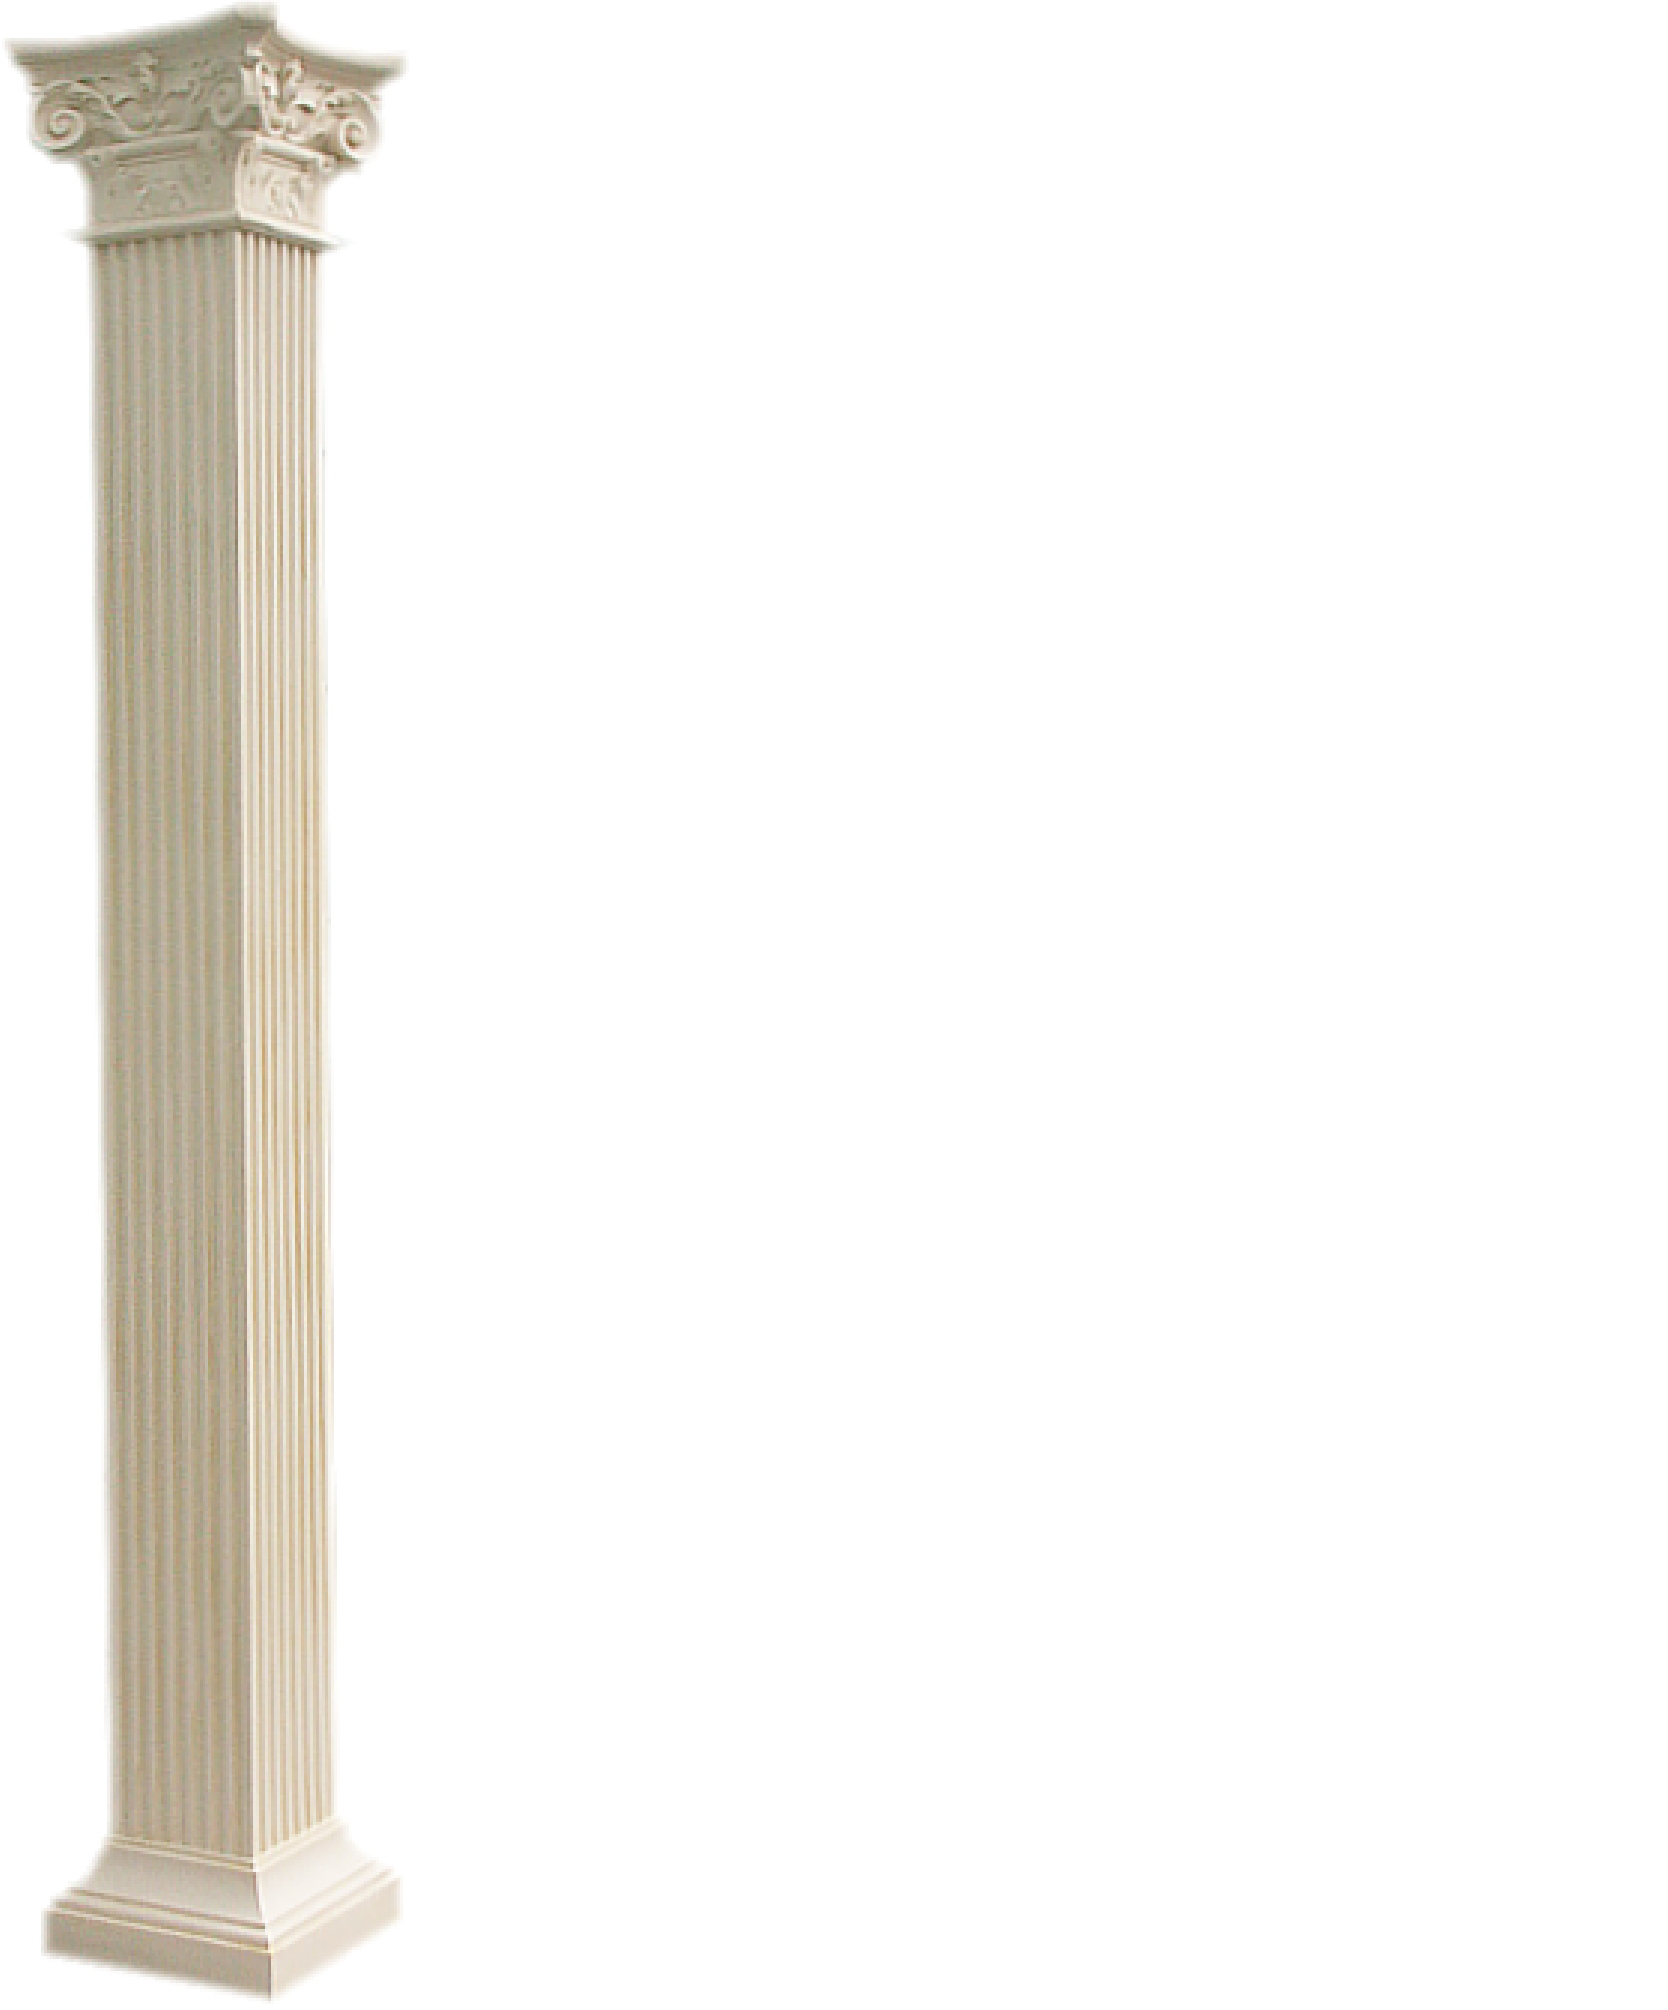 XXL Griechische Säule Antik Stil Design Säulen Luxus Stützen Neu 300cm